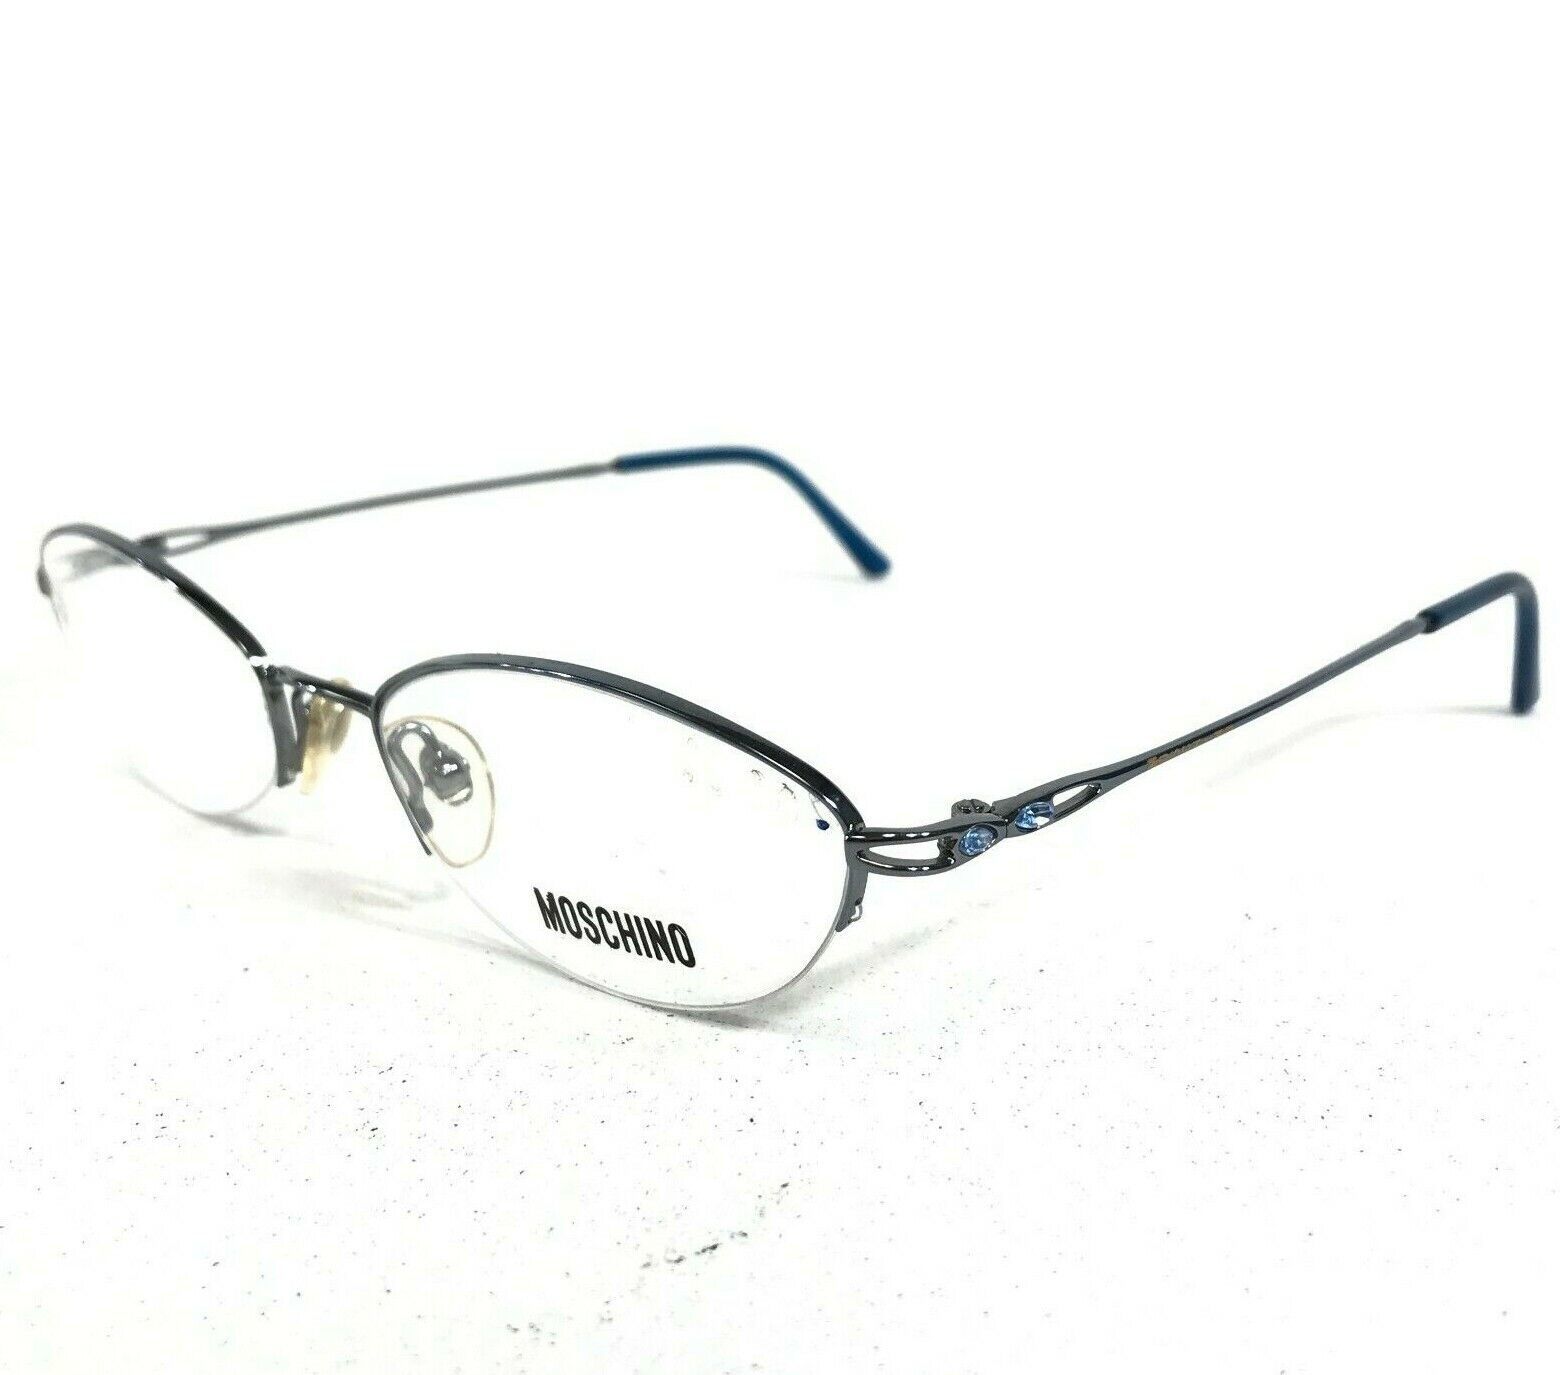 Primary image for Moschino M 3196-V-B Eyeglasses Frames Blue Gray Round Oval Half Rim Rhinestones